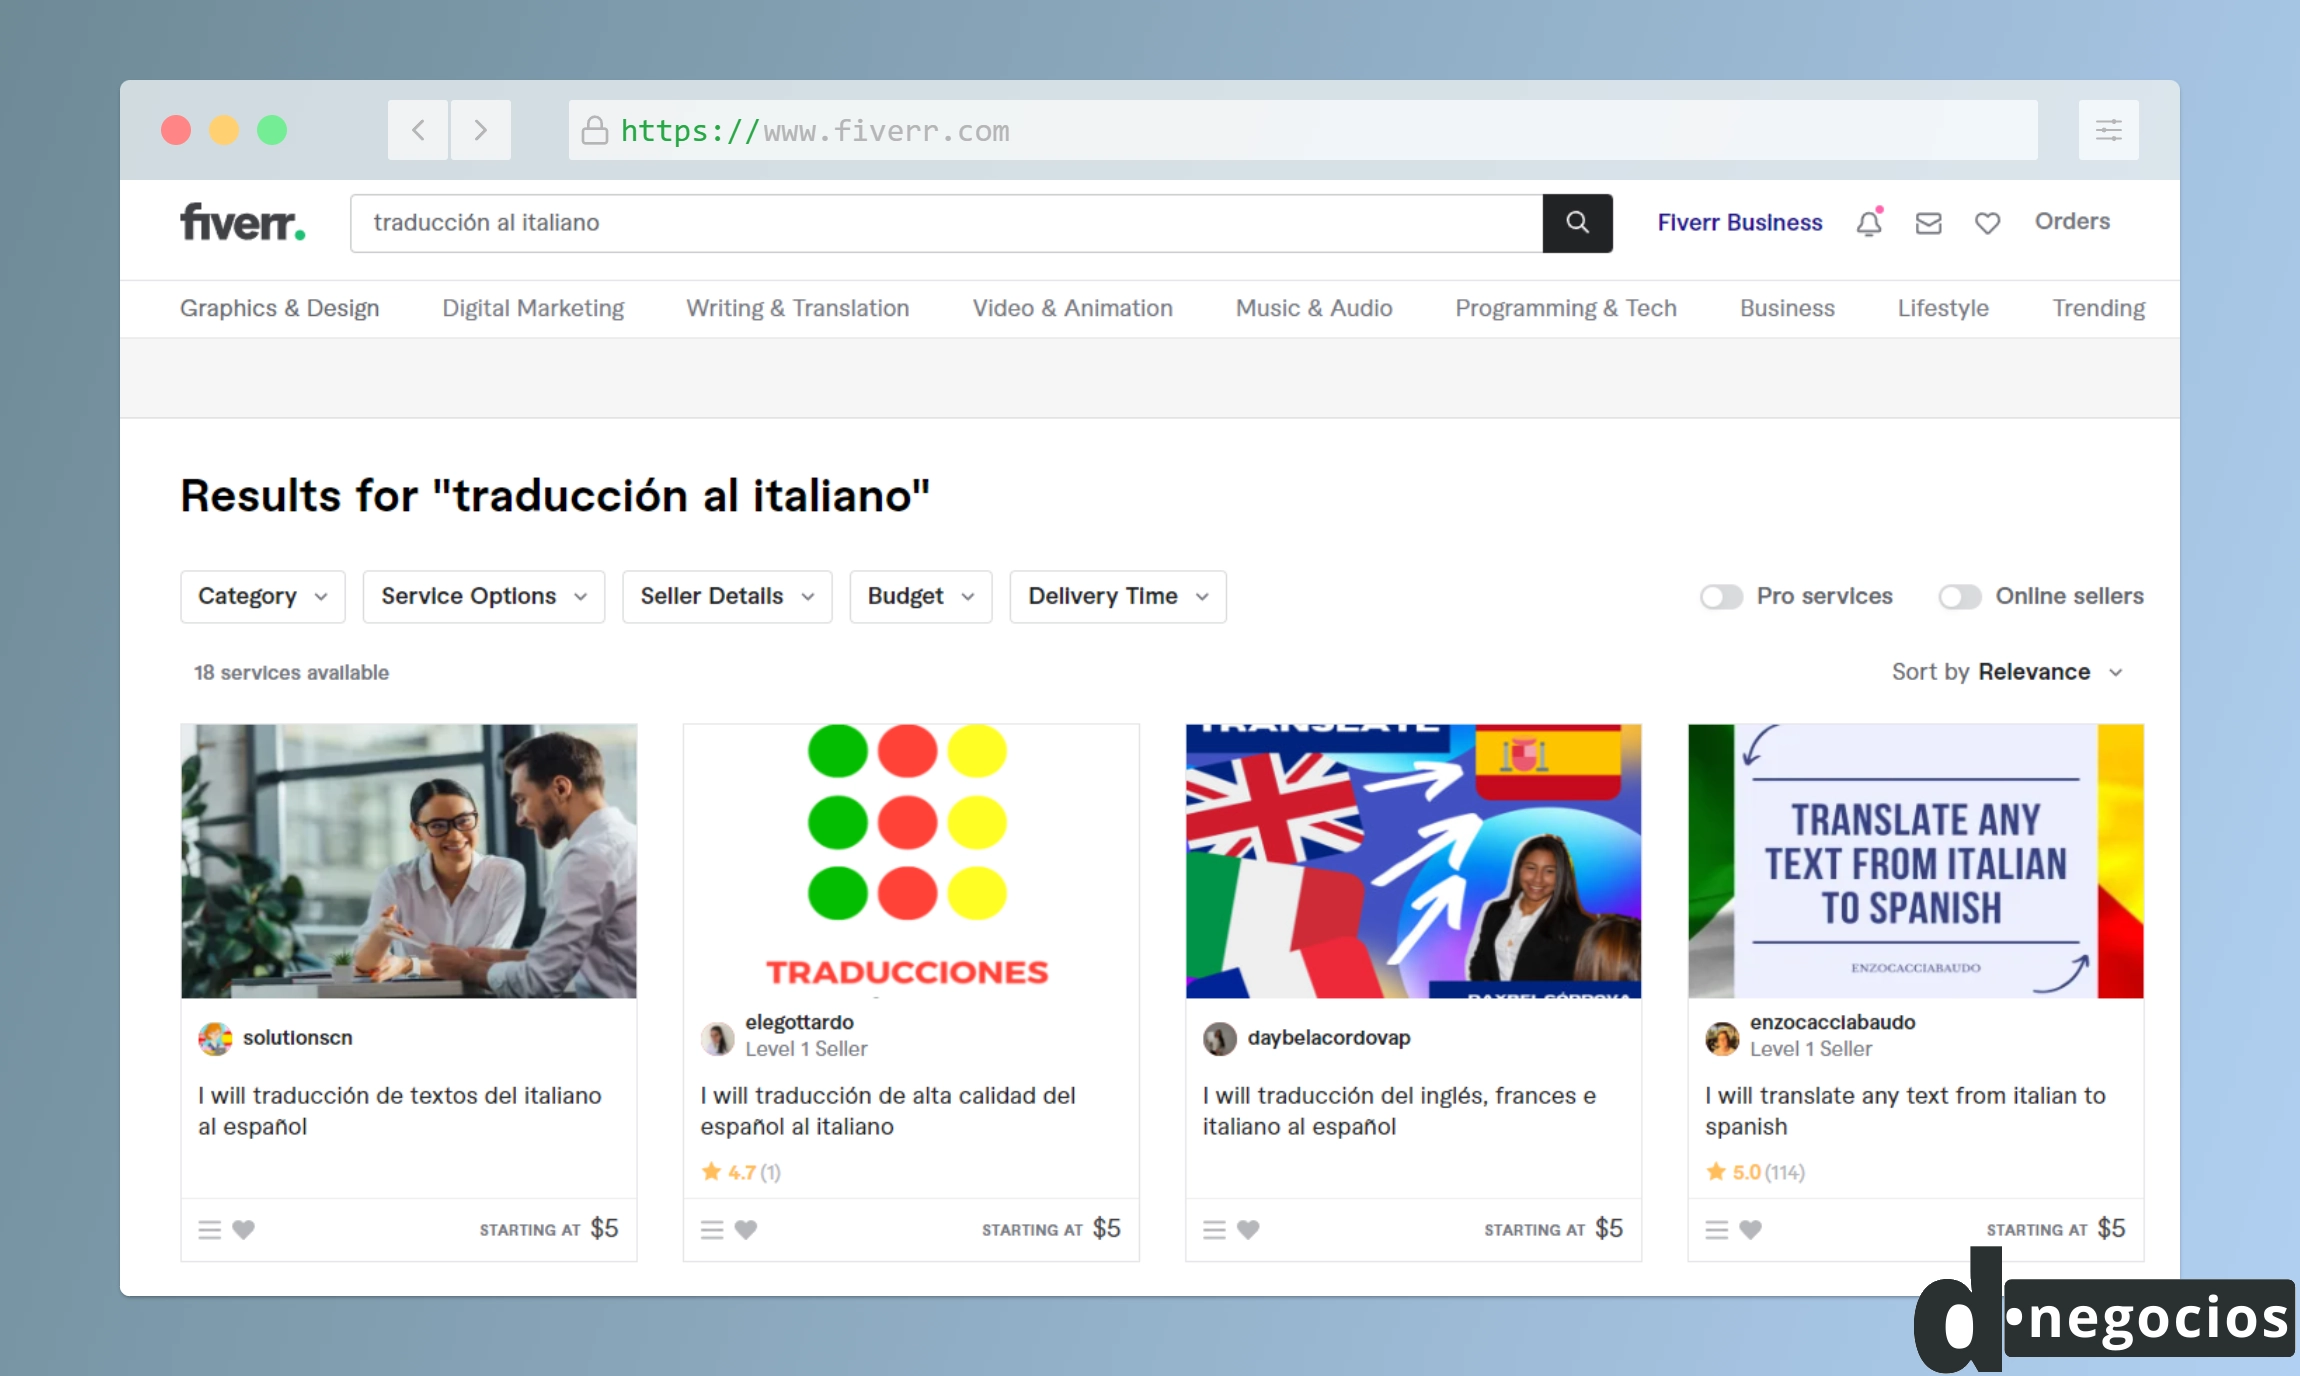 Servicios de traducción al italiano en Fiverr.